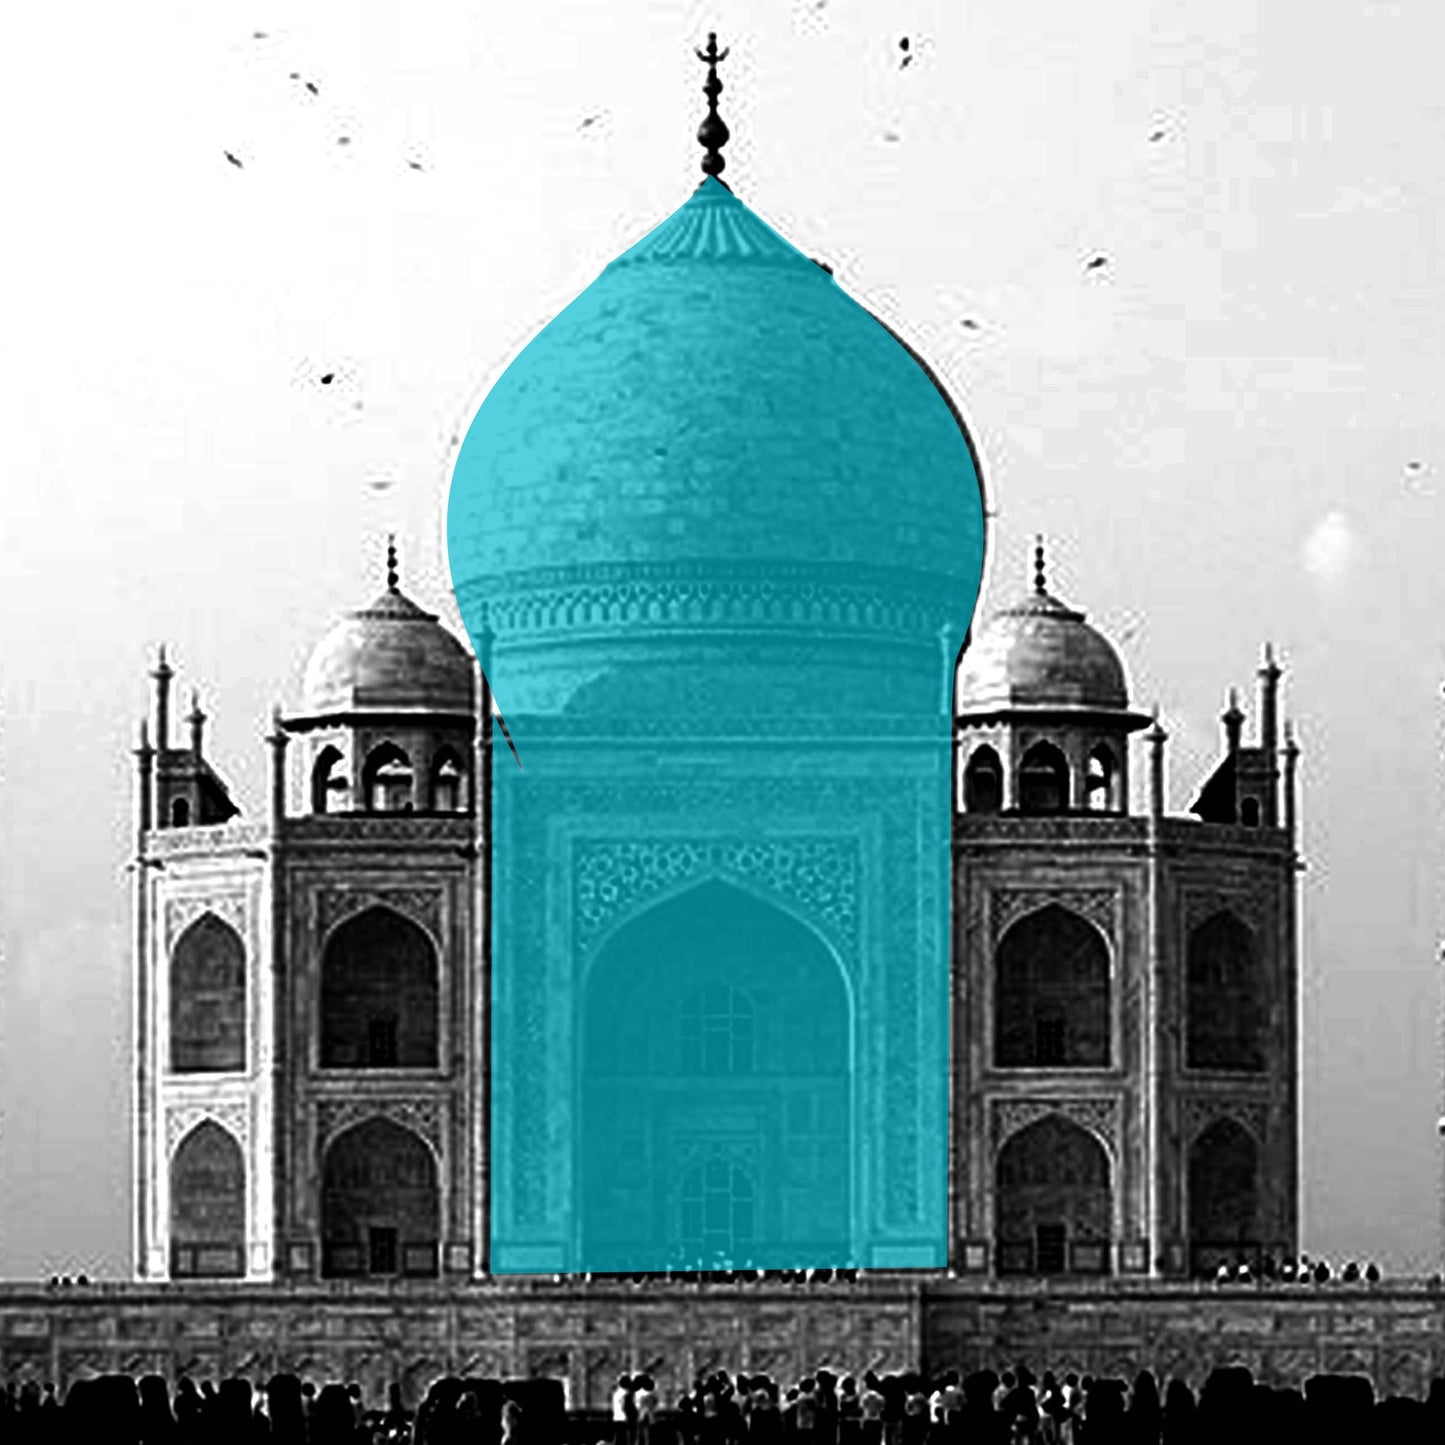 'Wonder of the World' Taj